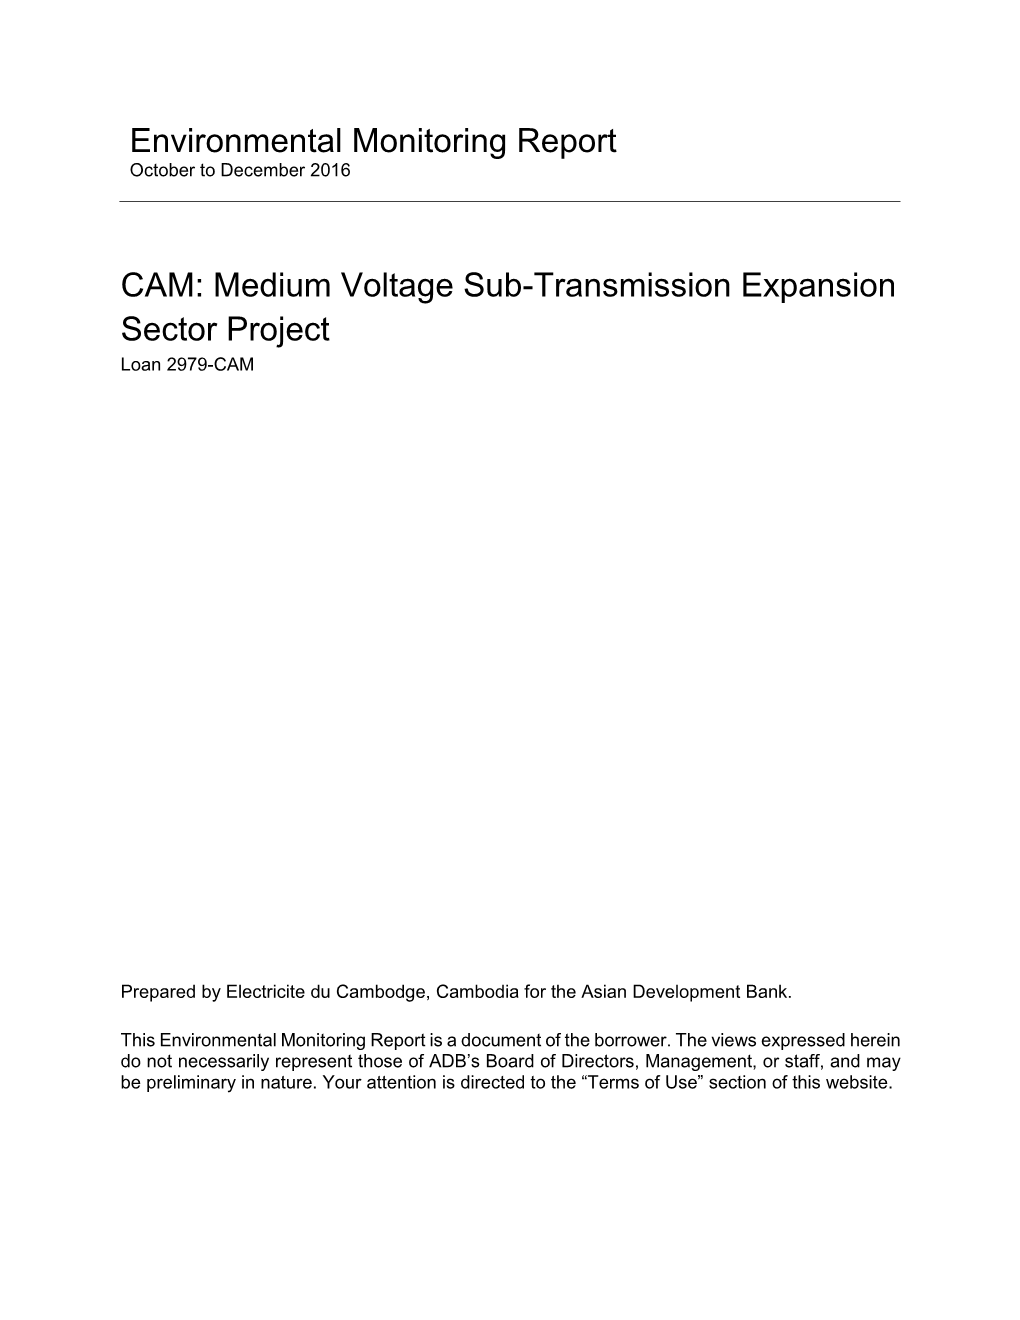 Environmental Monitoring Report CAM: Medium Voltage Sub